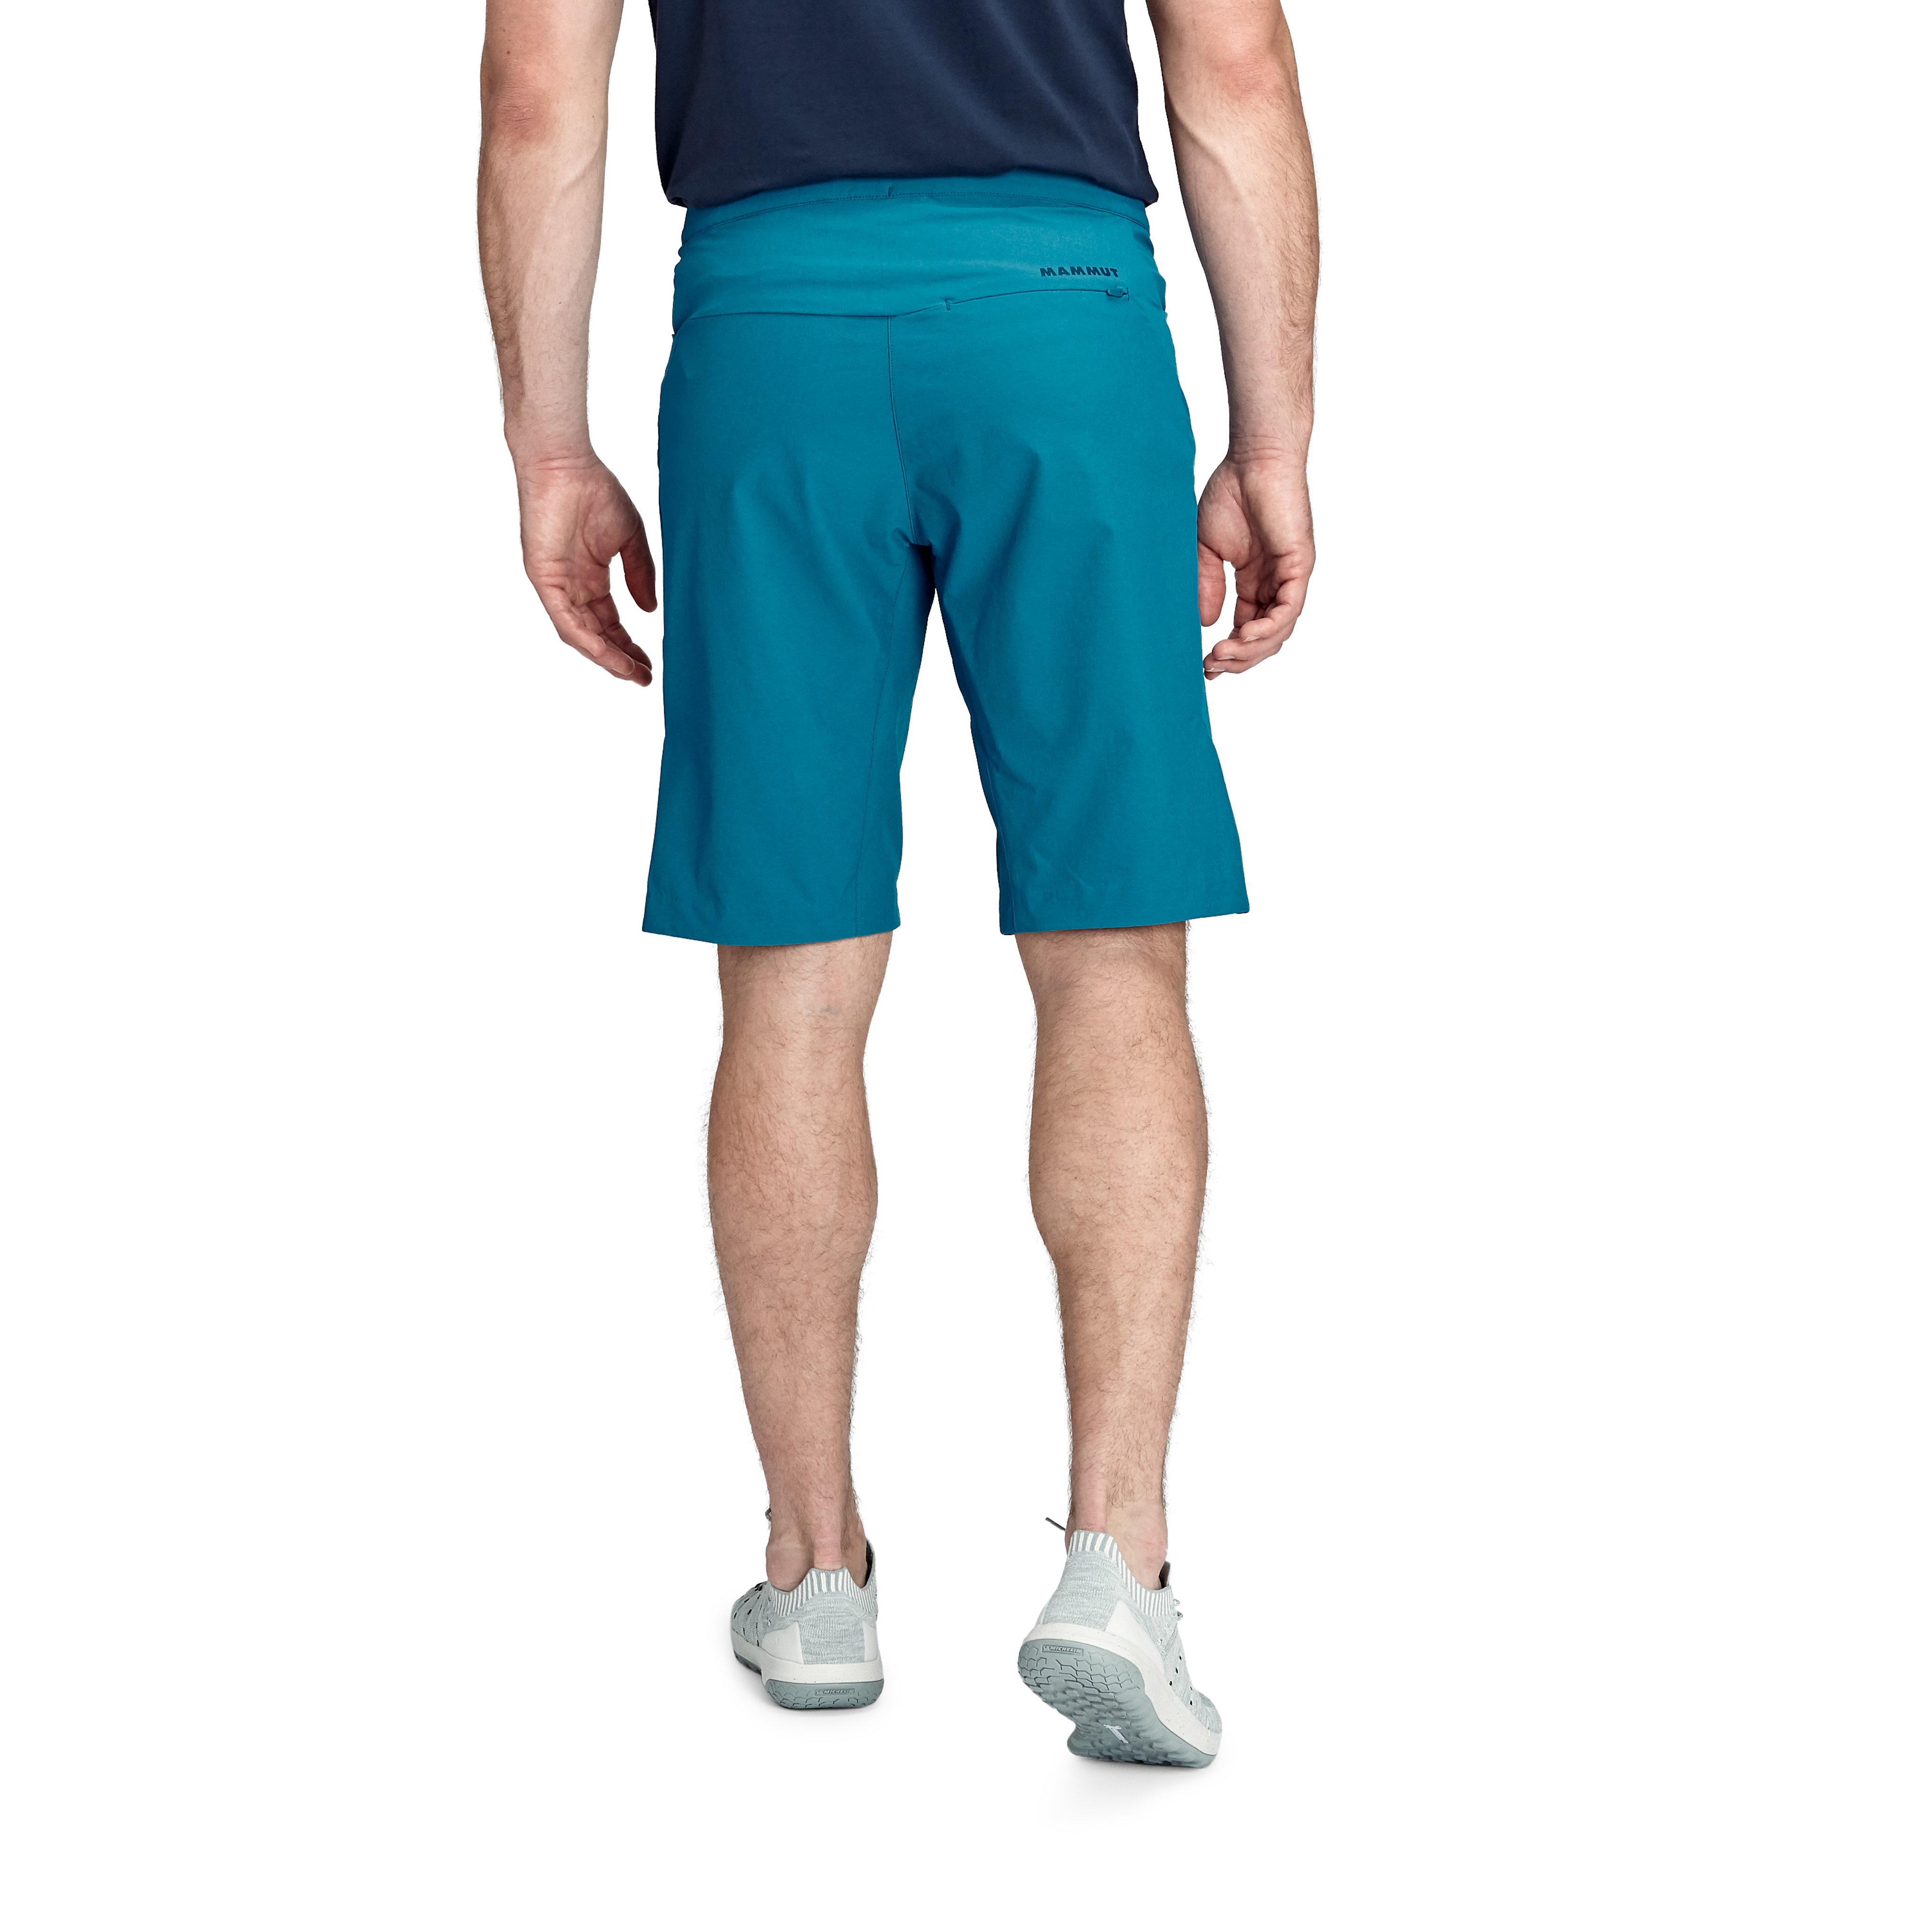 Massone Shorts Men product image